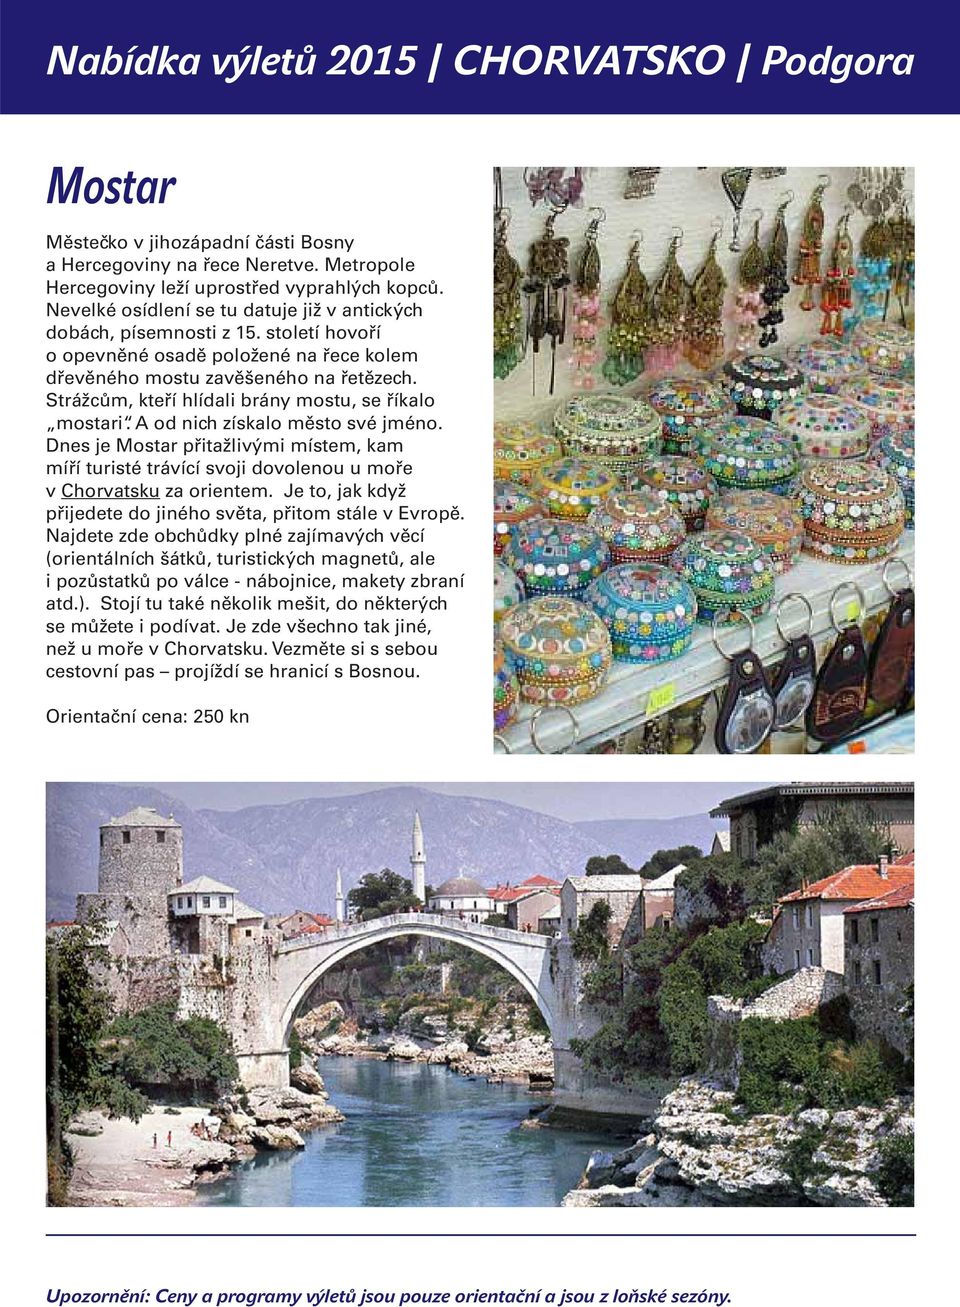 Dnes je Mostar přitažlivými místem, kam míří turisté trávící svoji dovolenou u moře v Chorvatsku za orientem. Je to, jak když přijedete do jiného světa, přitom stále v Evropě.